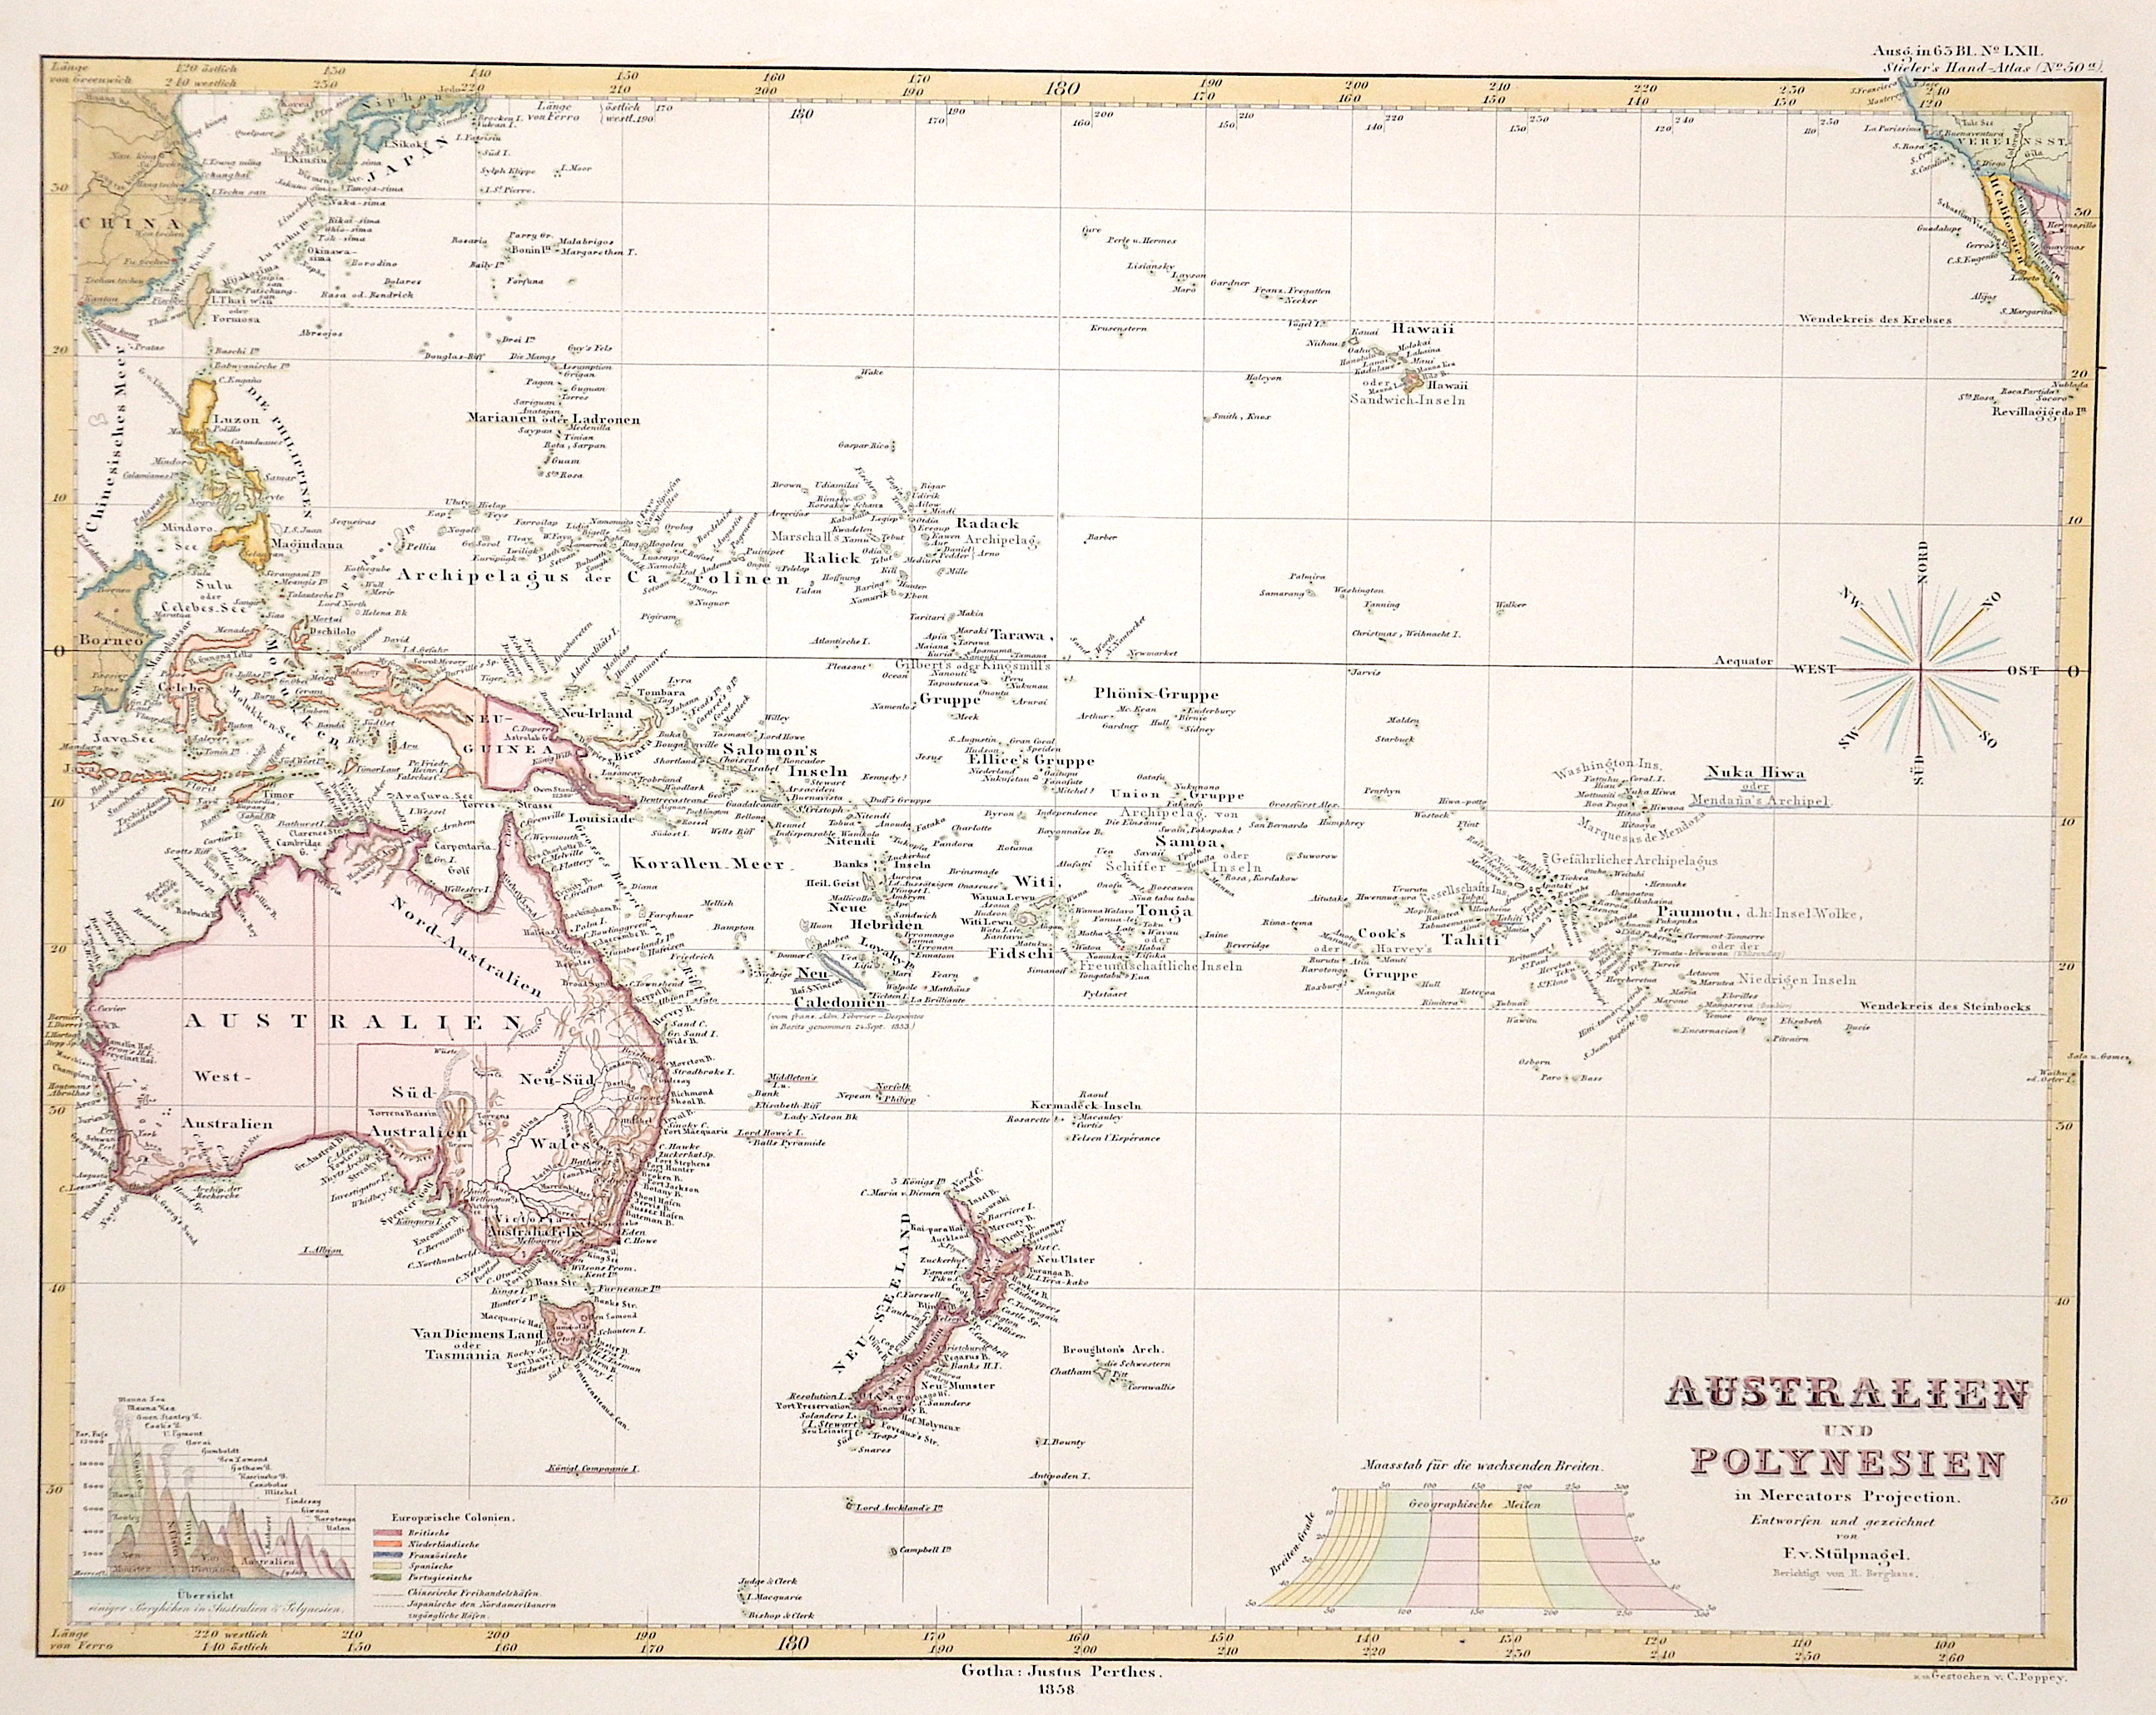 Stülpnagel, von  Australien und Polynesien in Mercator Projection.